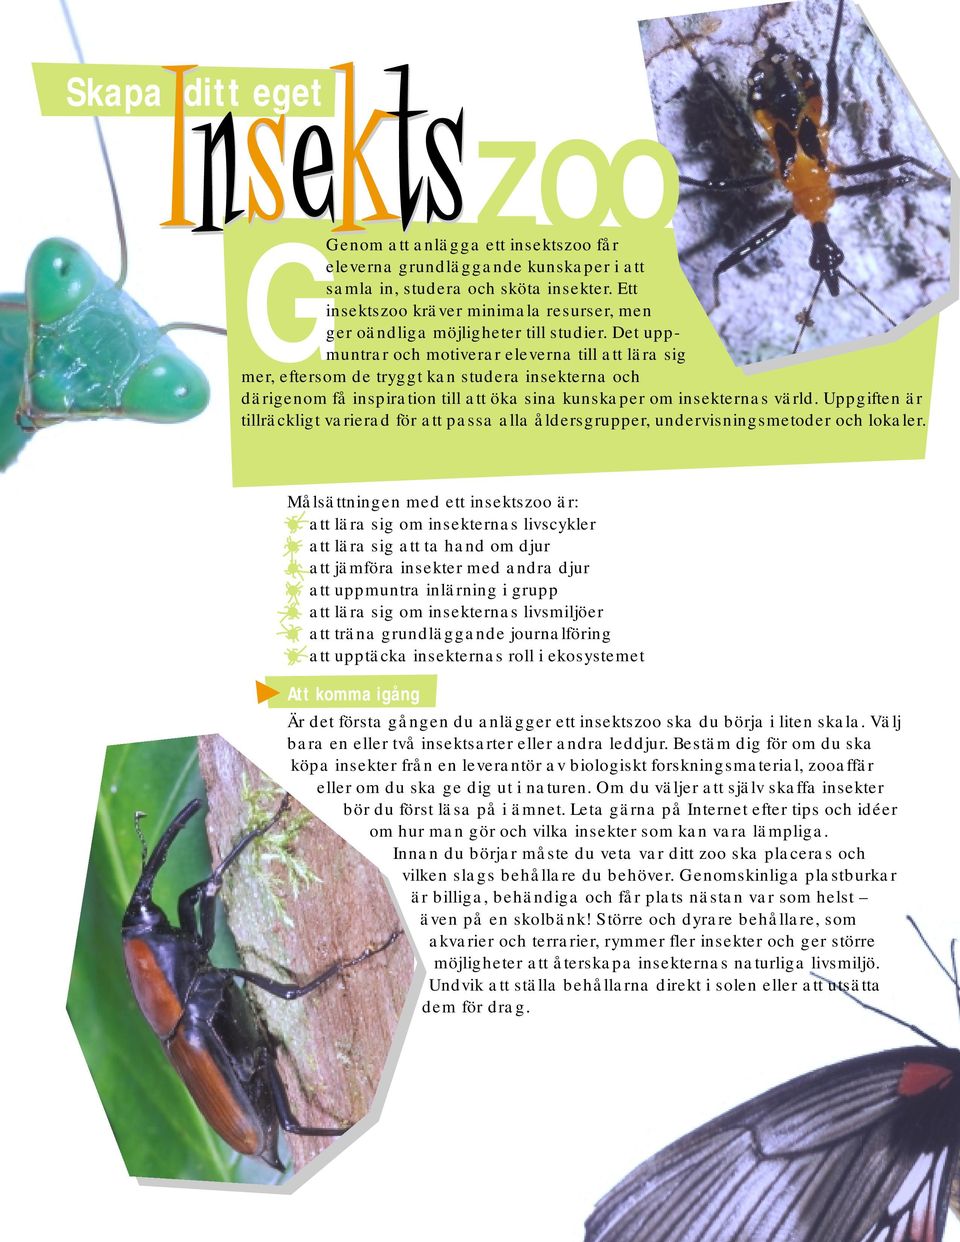 Det uppmuntrar och motiverar eleverna till att lära sig mer, eftersom de tryggt kan studera insekterna och därigenom få inspiration till att öka sina kunskaper om insekternas värld.